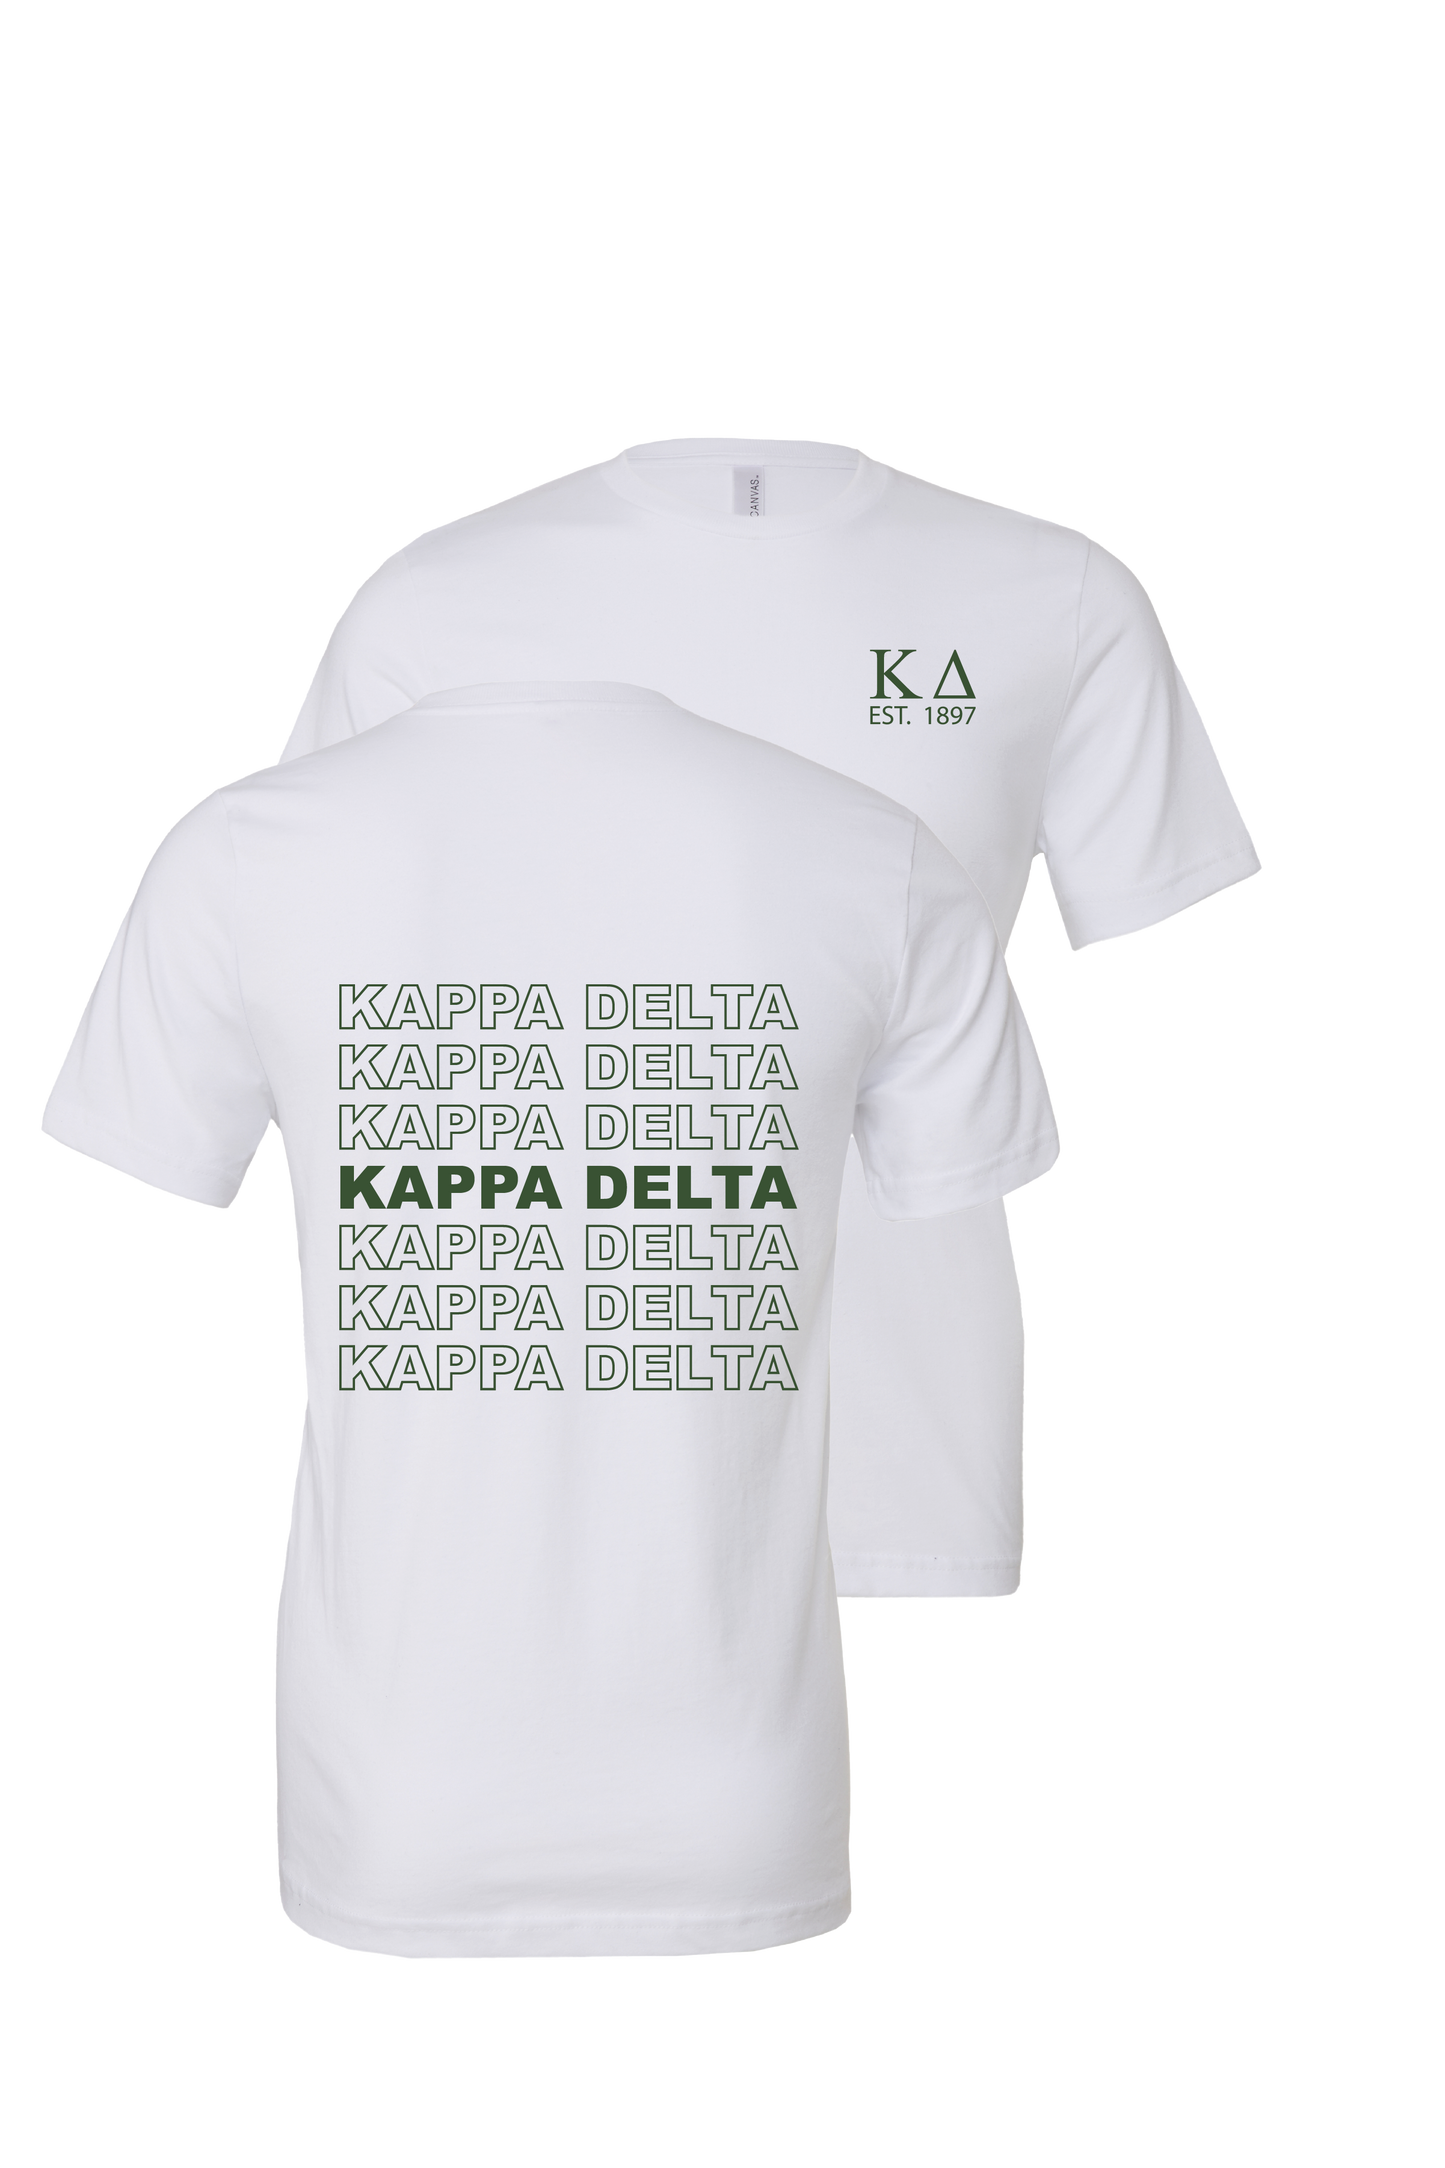 Kappa Delta Repeating Name Short Sleeve T-Shirts